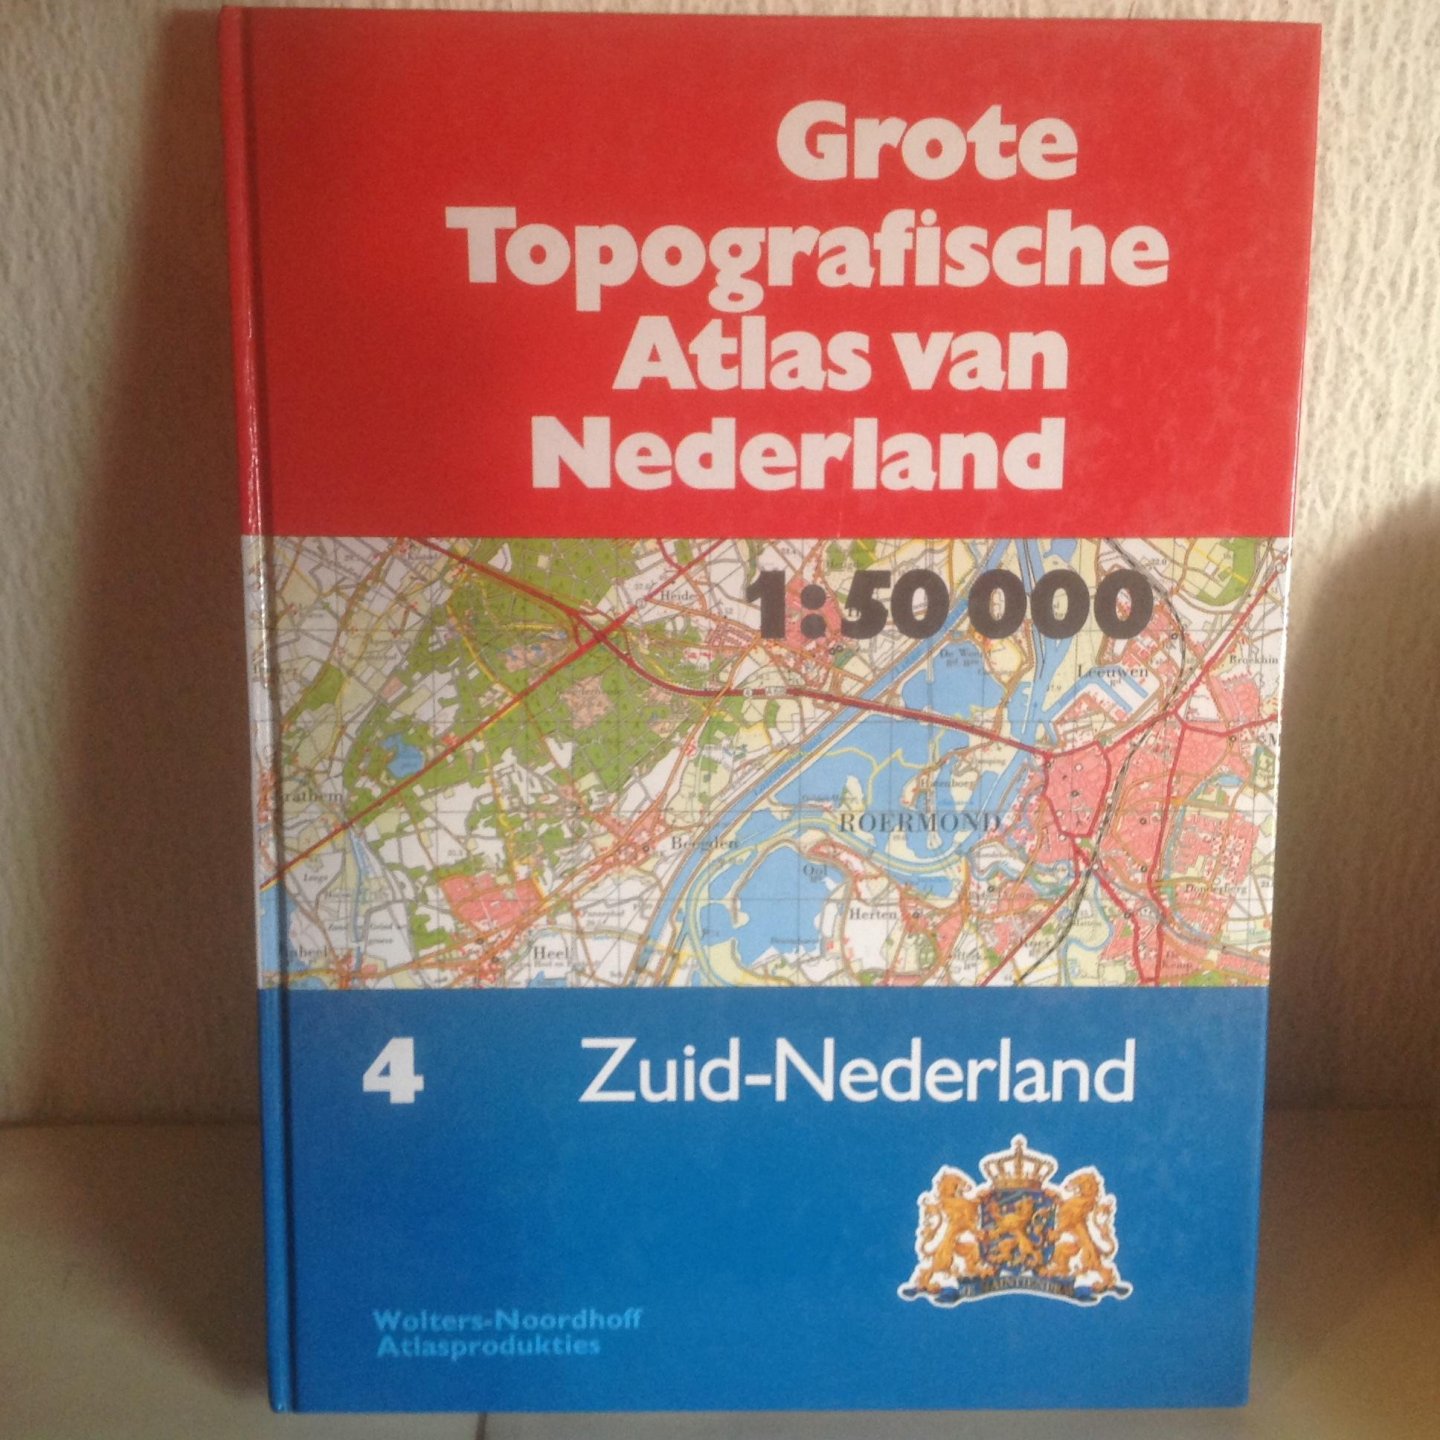  - Grote topografische atlas van Nederland / 4 Zuid-Nederland / druk 1